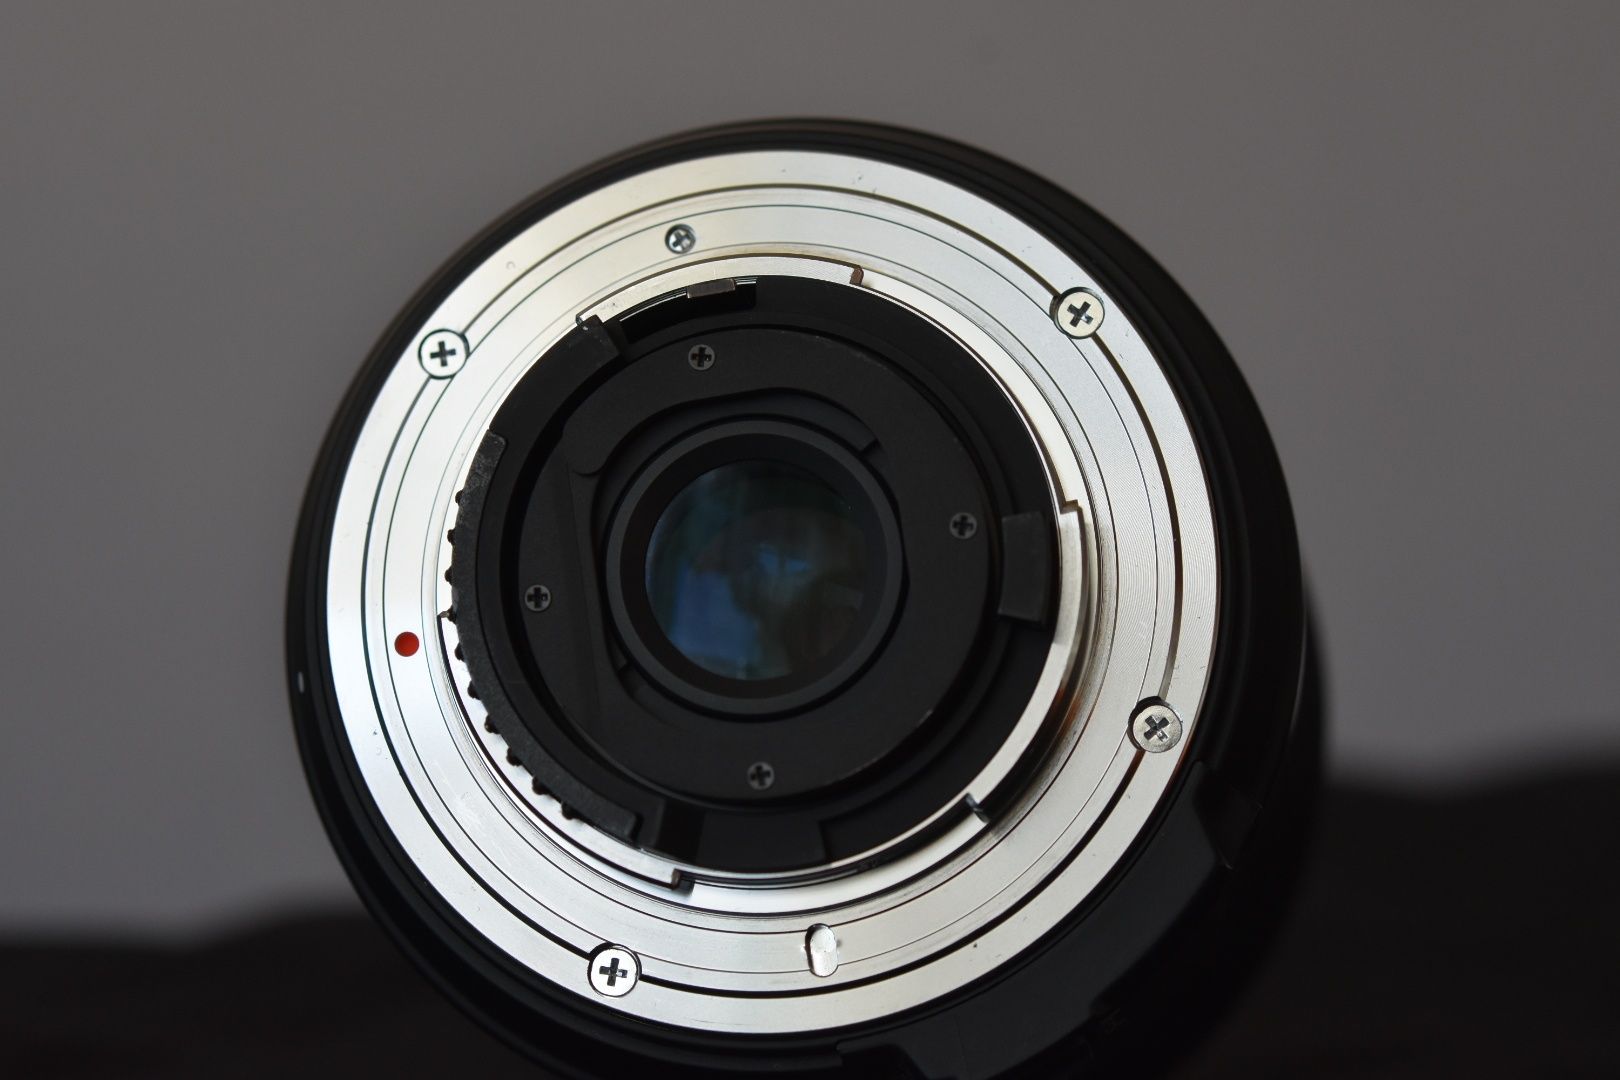 Sigma AF 4,5mm F2,8 EX DС HSM Circular Fisheye (Nikon)